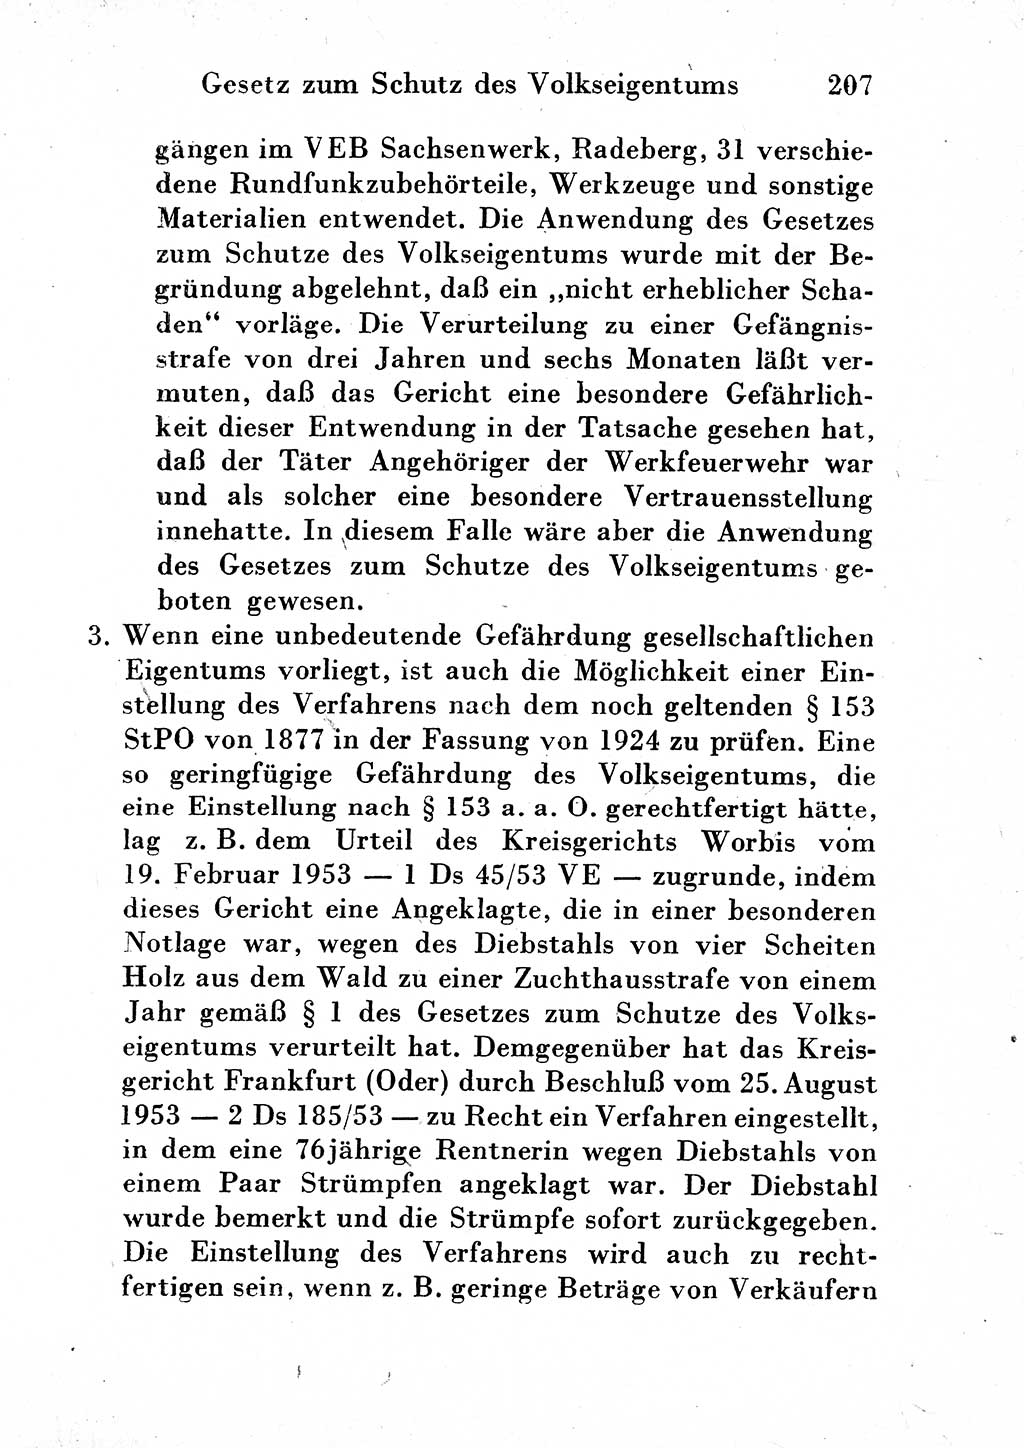 Strafgesetzbuch (StGB) und andere Strafgesetze [Deutsche Demokratische Republik (DDR)] 1954, Seite 207 (StGB Strafges. DDR 1954, S. 207)